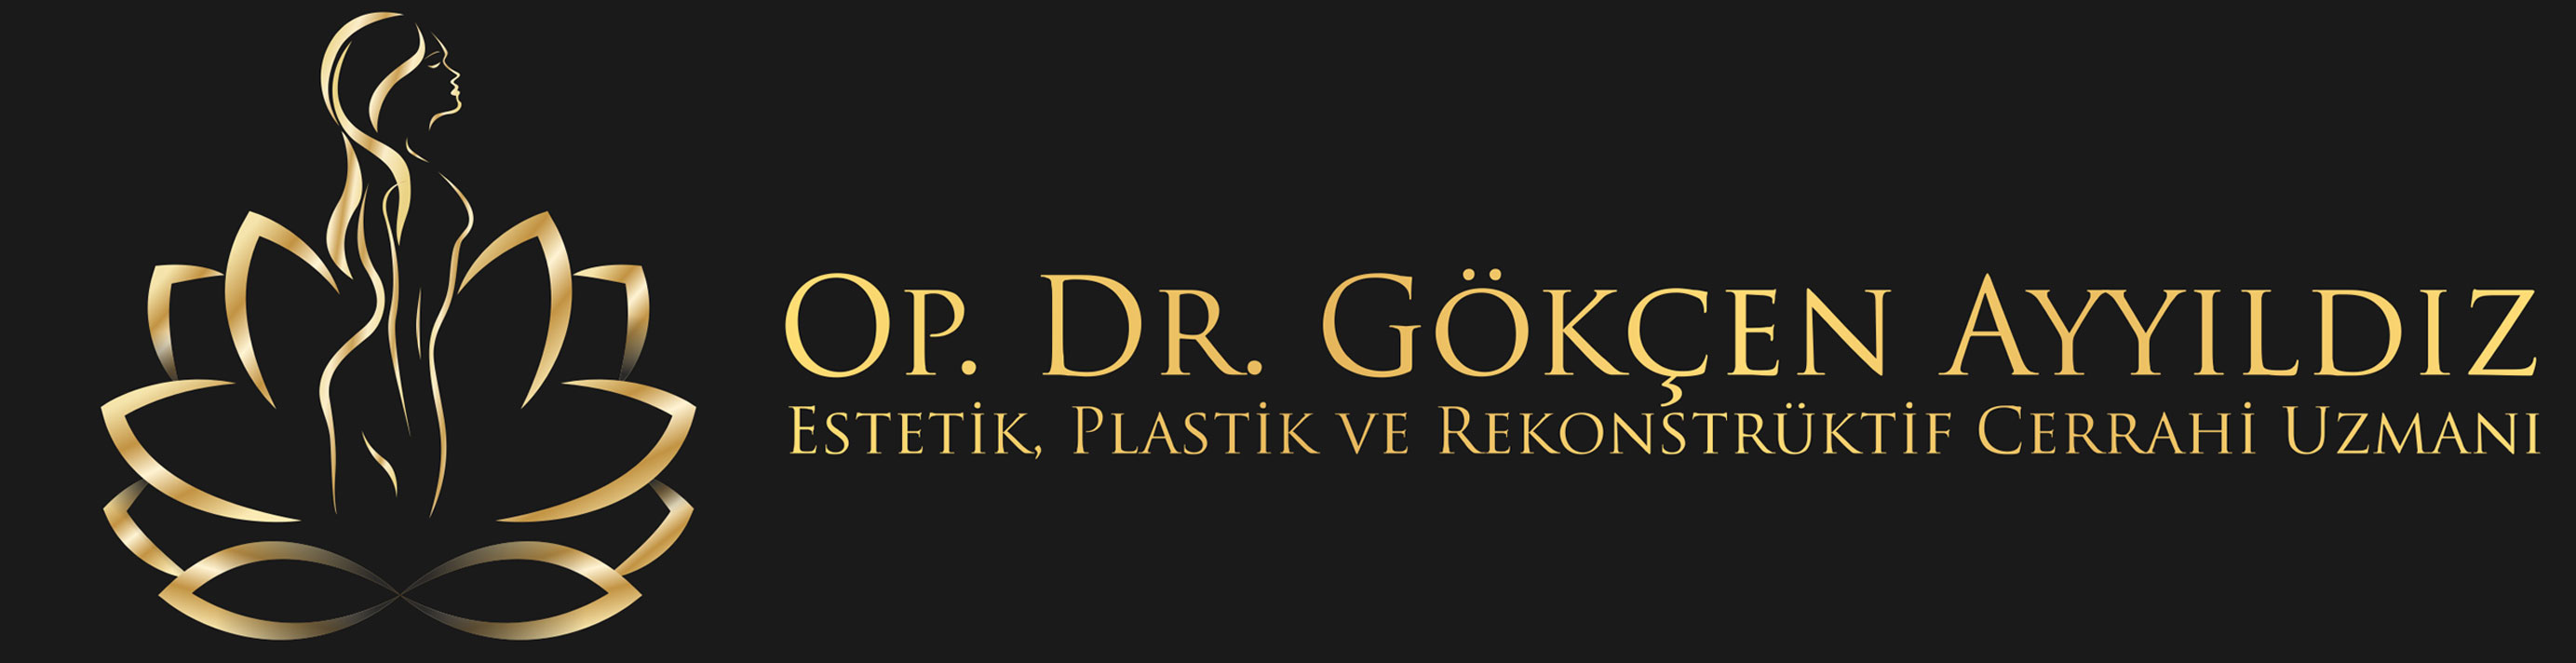 Op. Dr. Gökçen AYYILDIZ